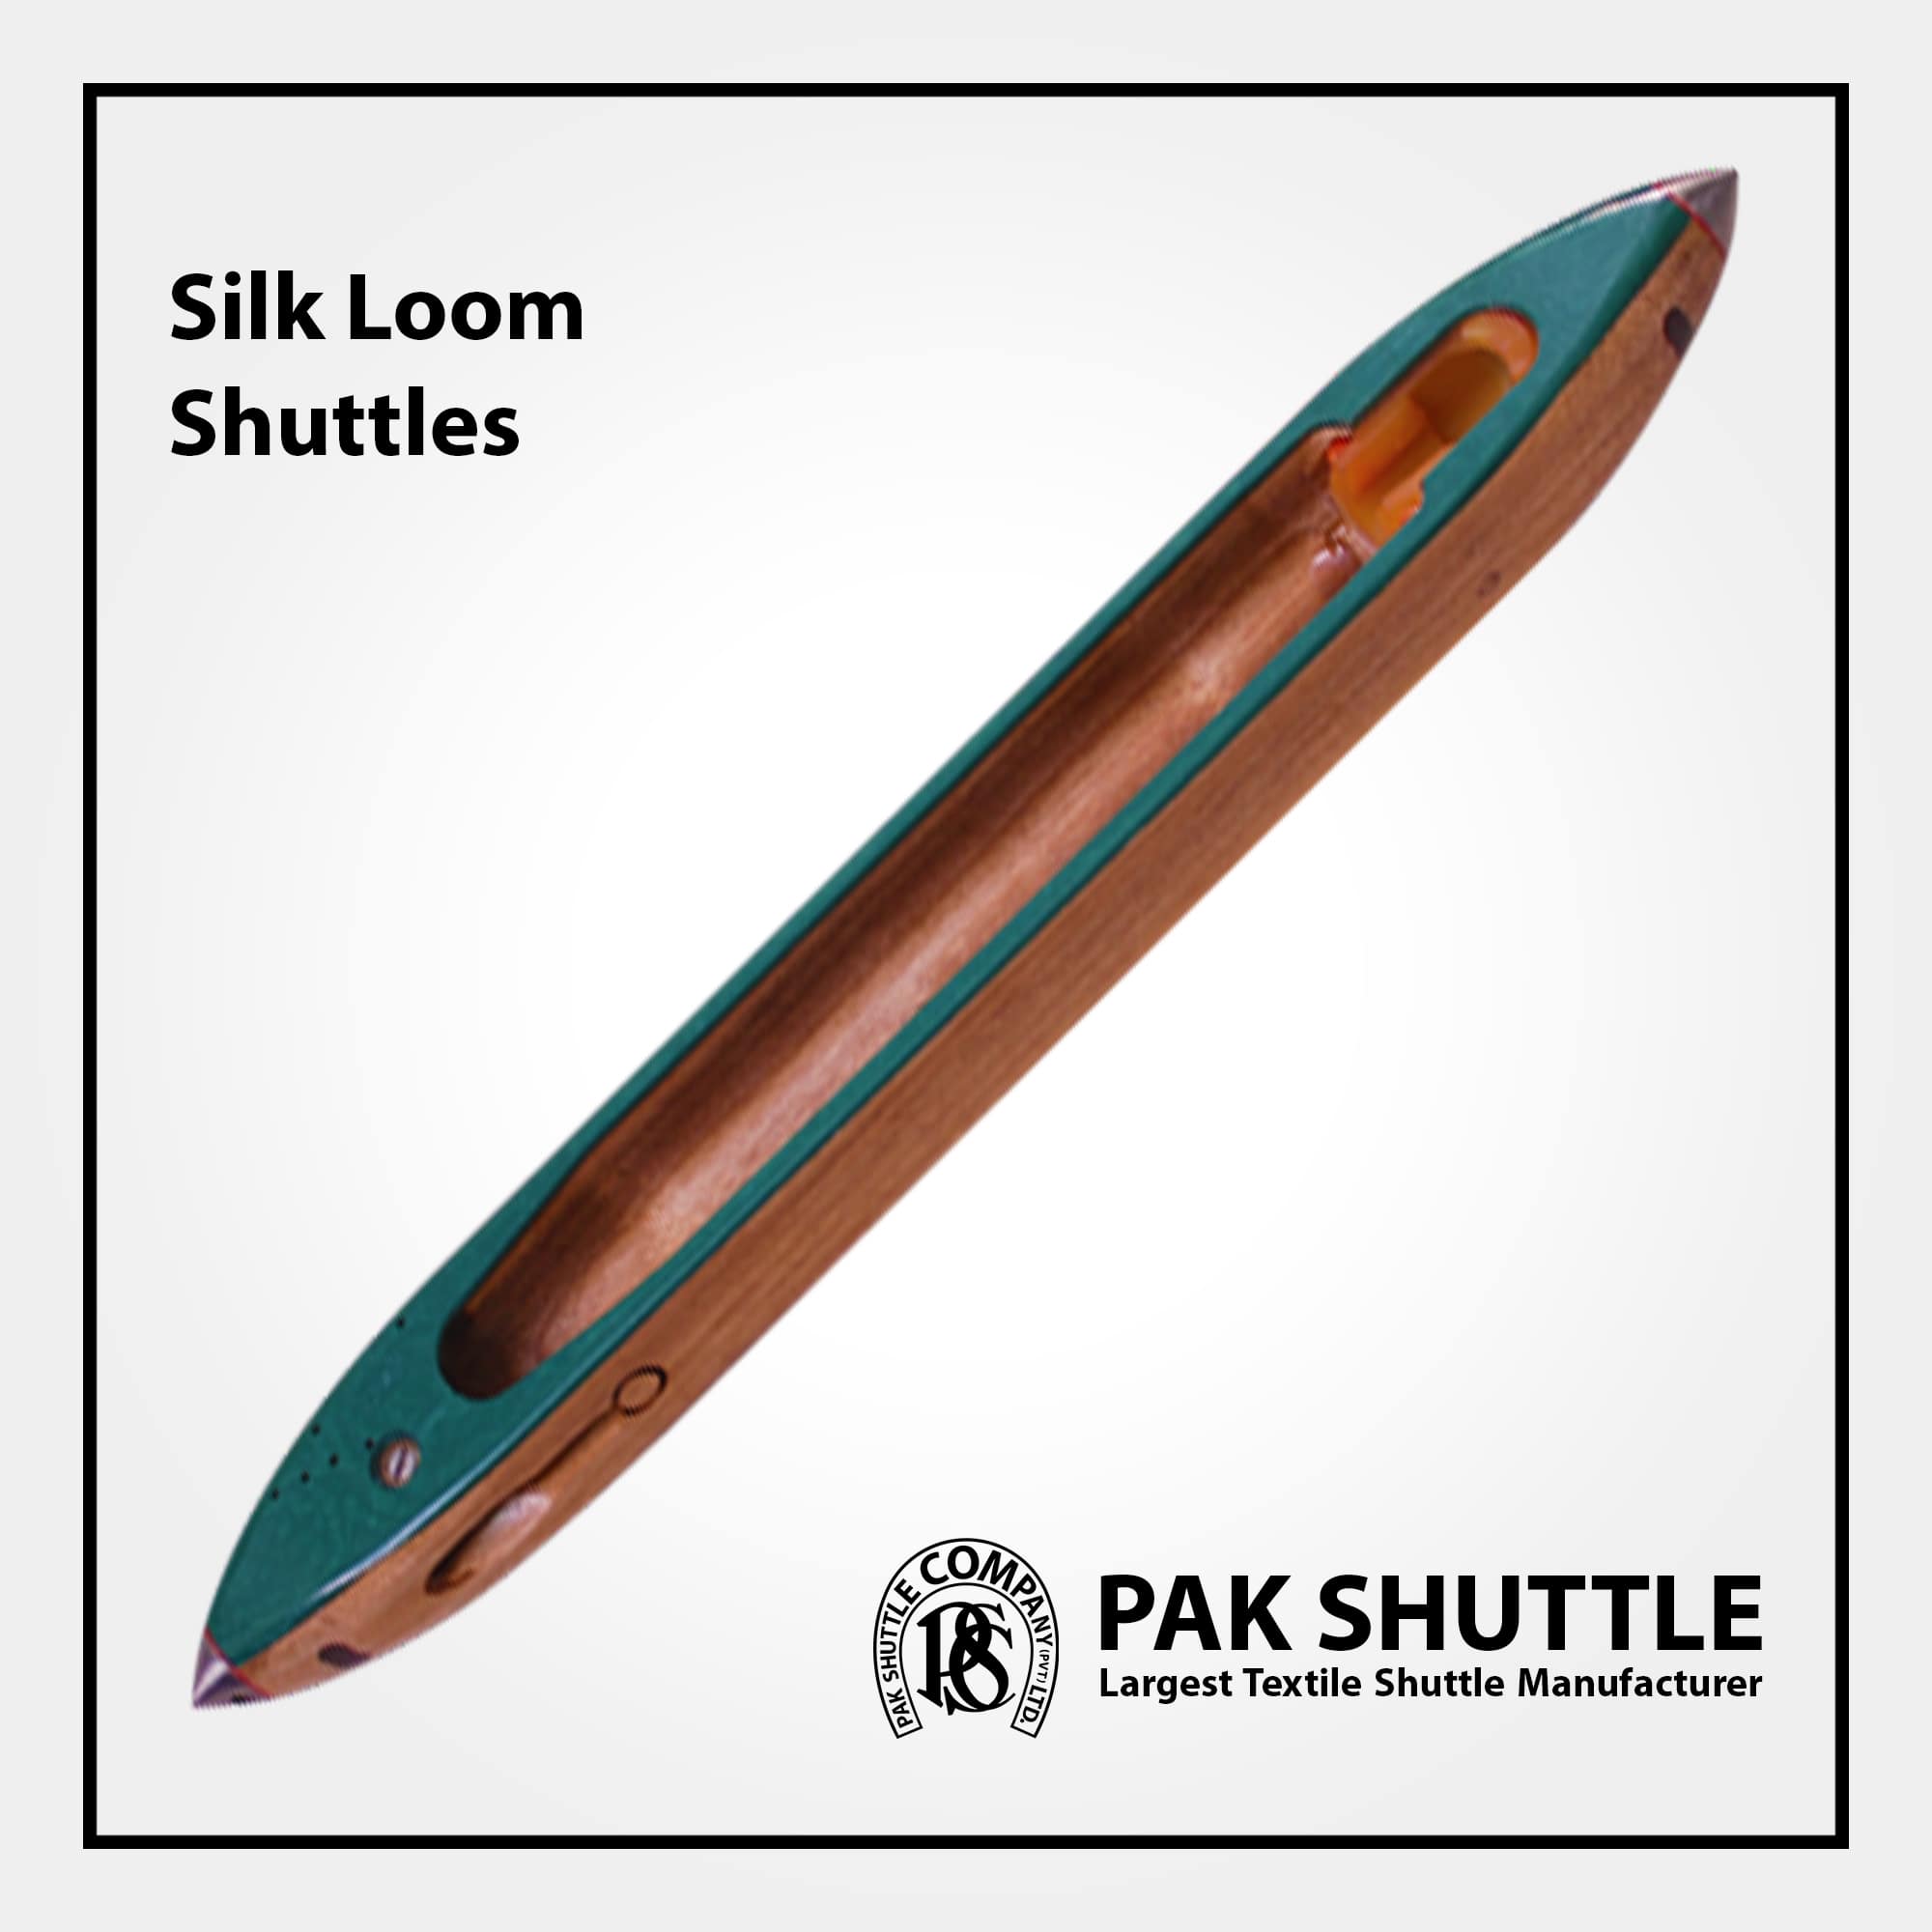 Silk Loom Shuttle by Pak Shuttle Company Pvt Ltd.